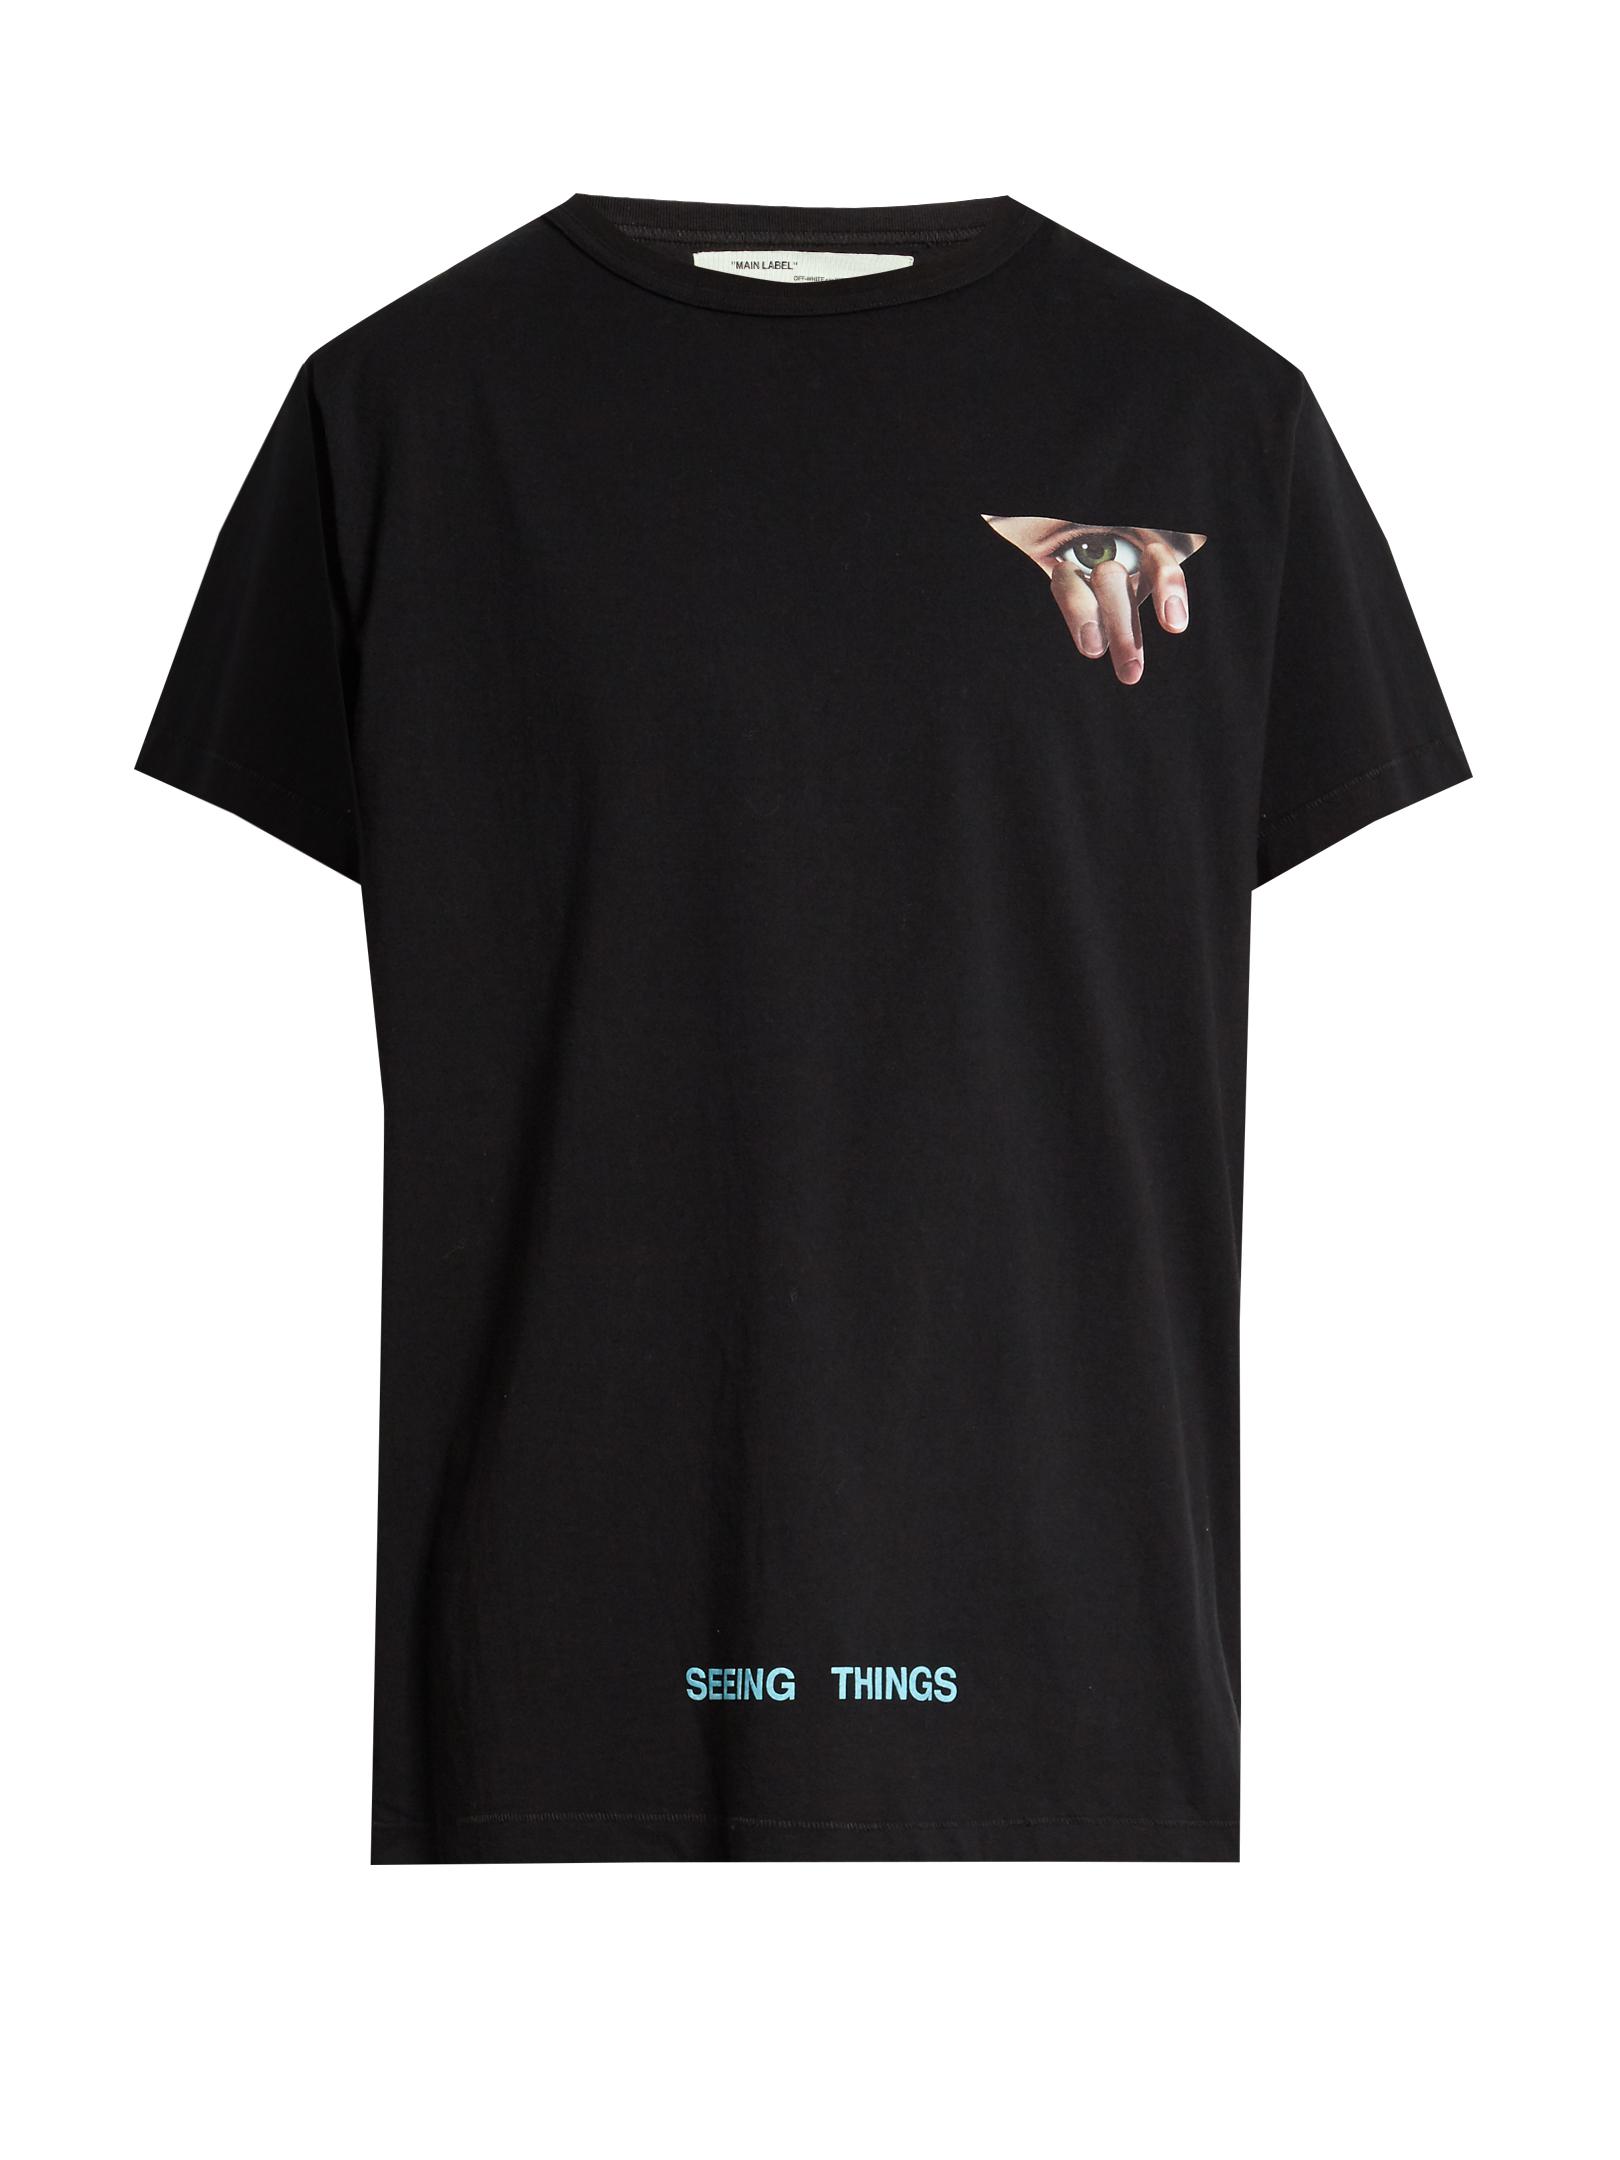 Off-White c/o Virgil Abloh Eyes-print T-shirt in Black for Men | Lyst